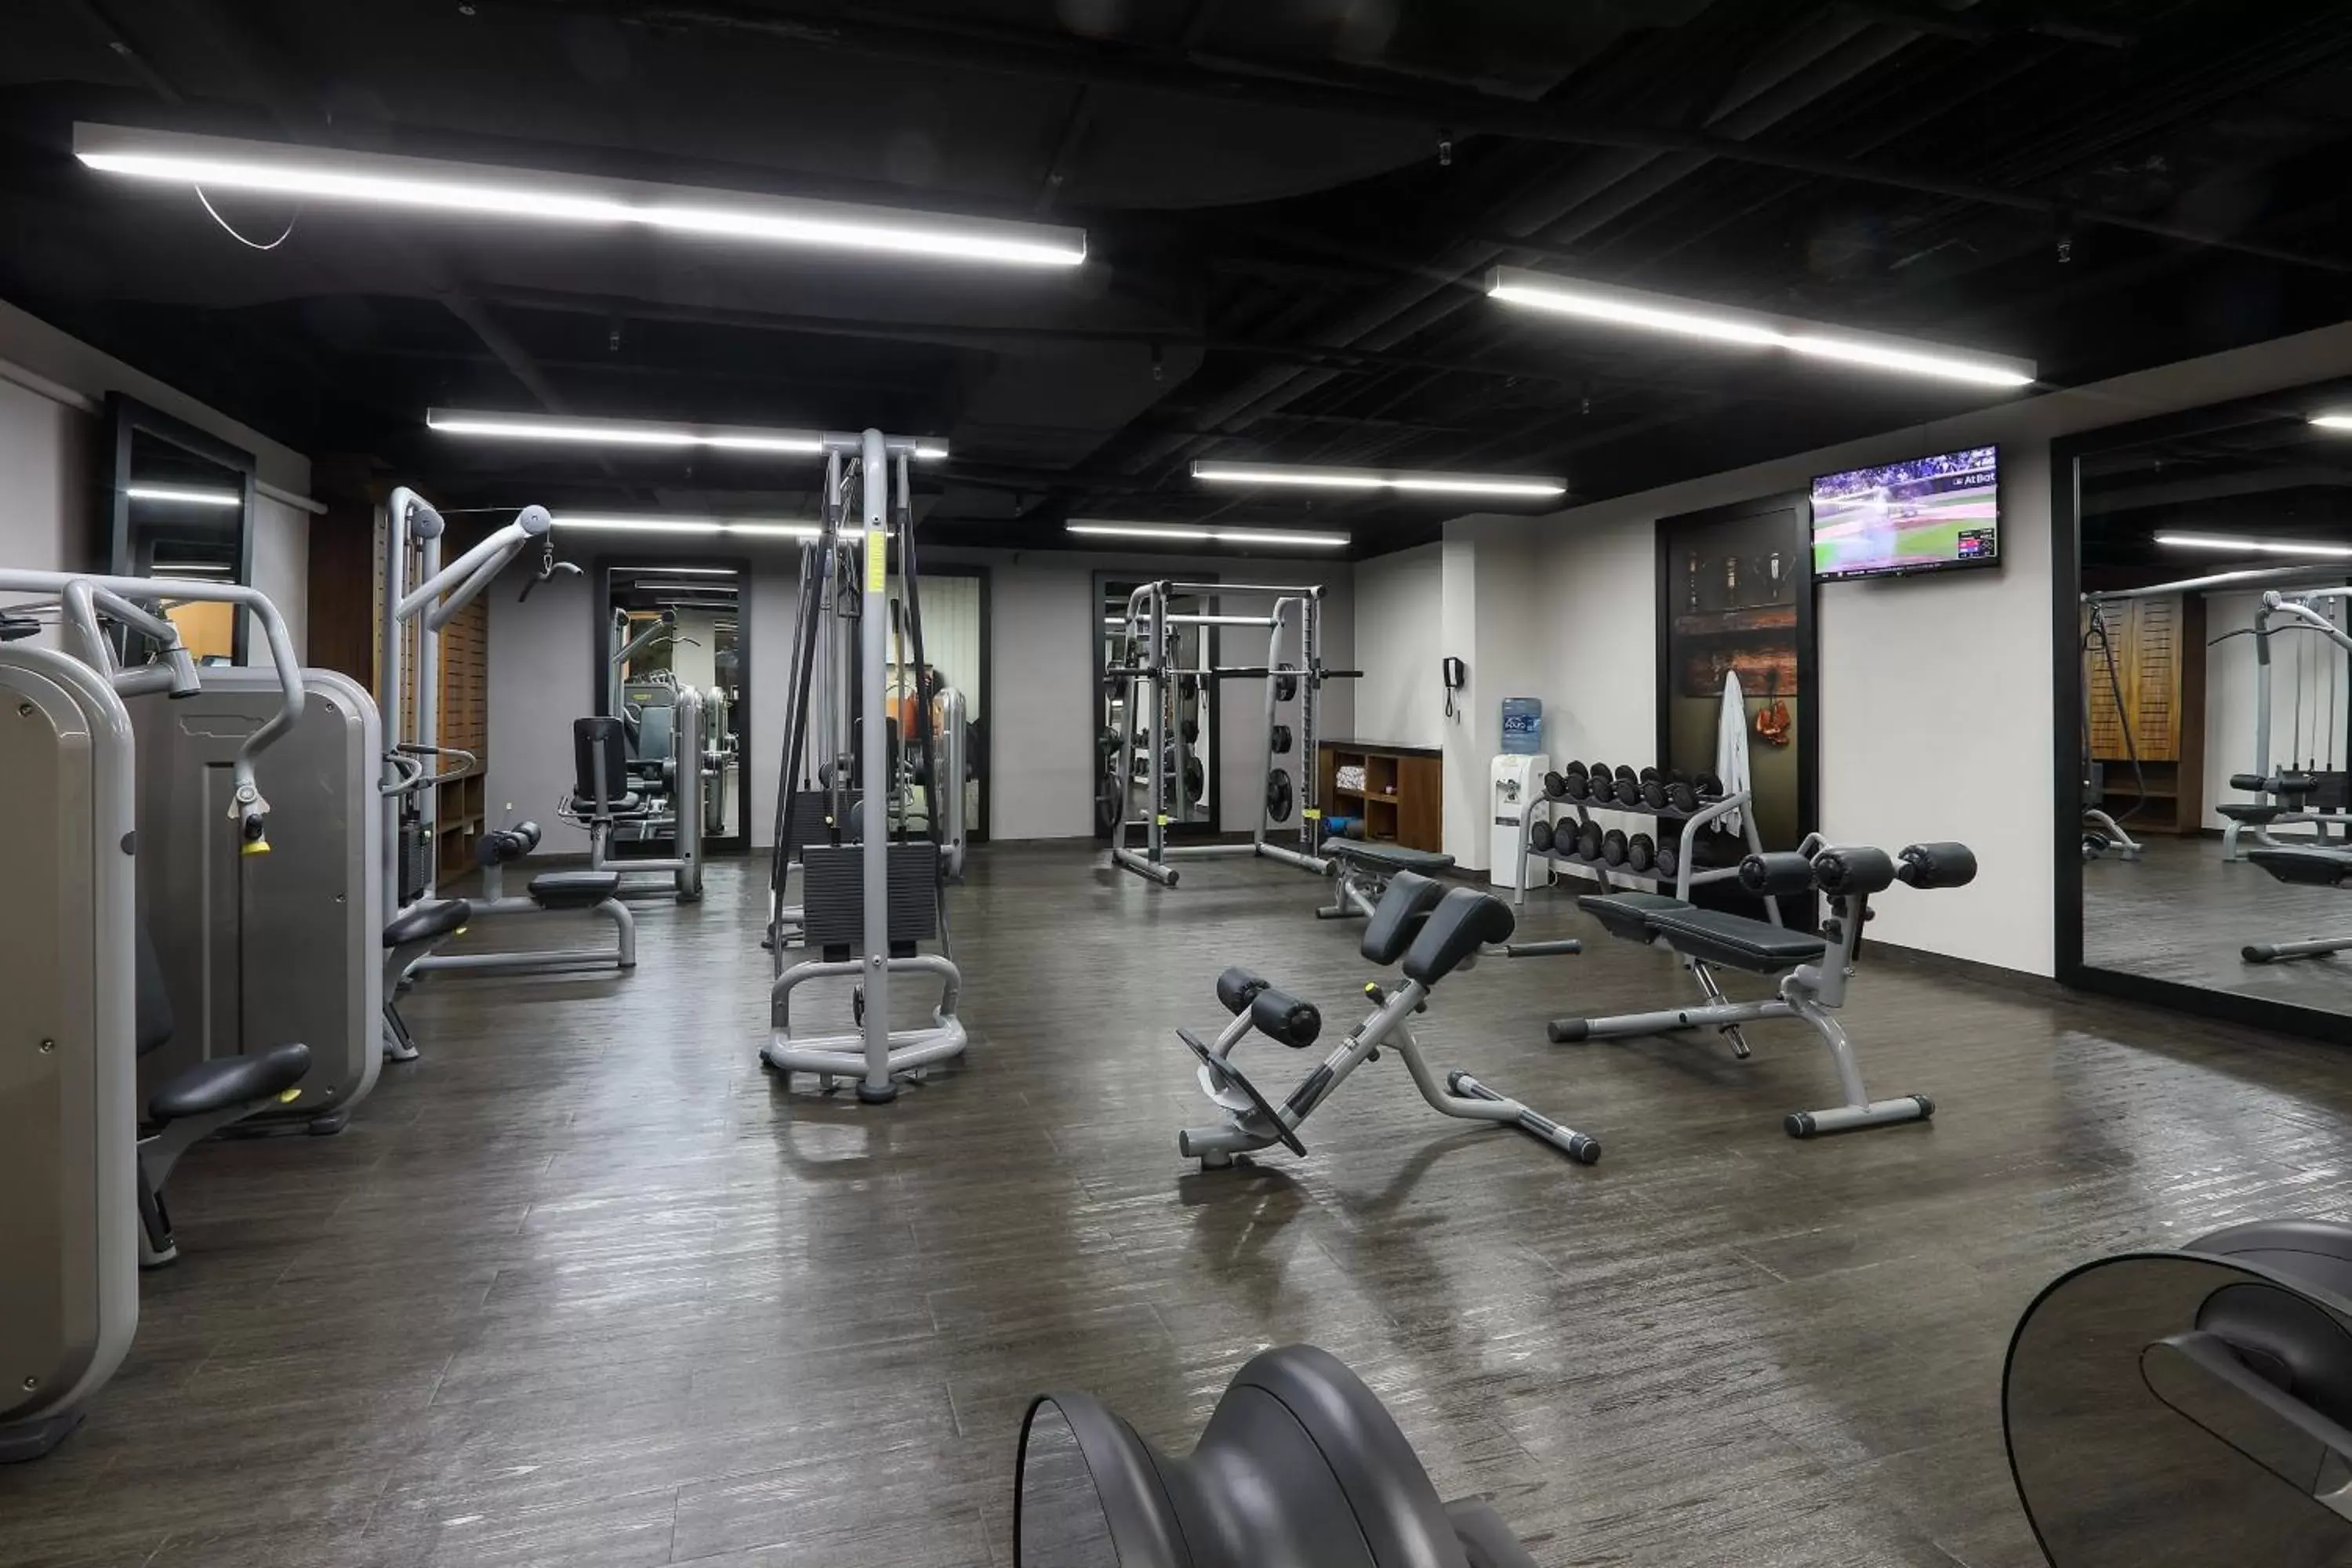 Fitness centre/facilities, Fitness Center/Facilities in Villahermosa Marriott Hotel